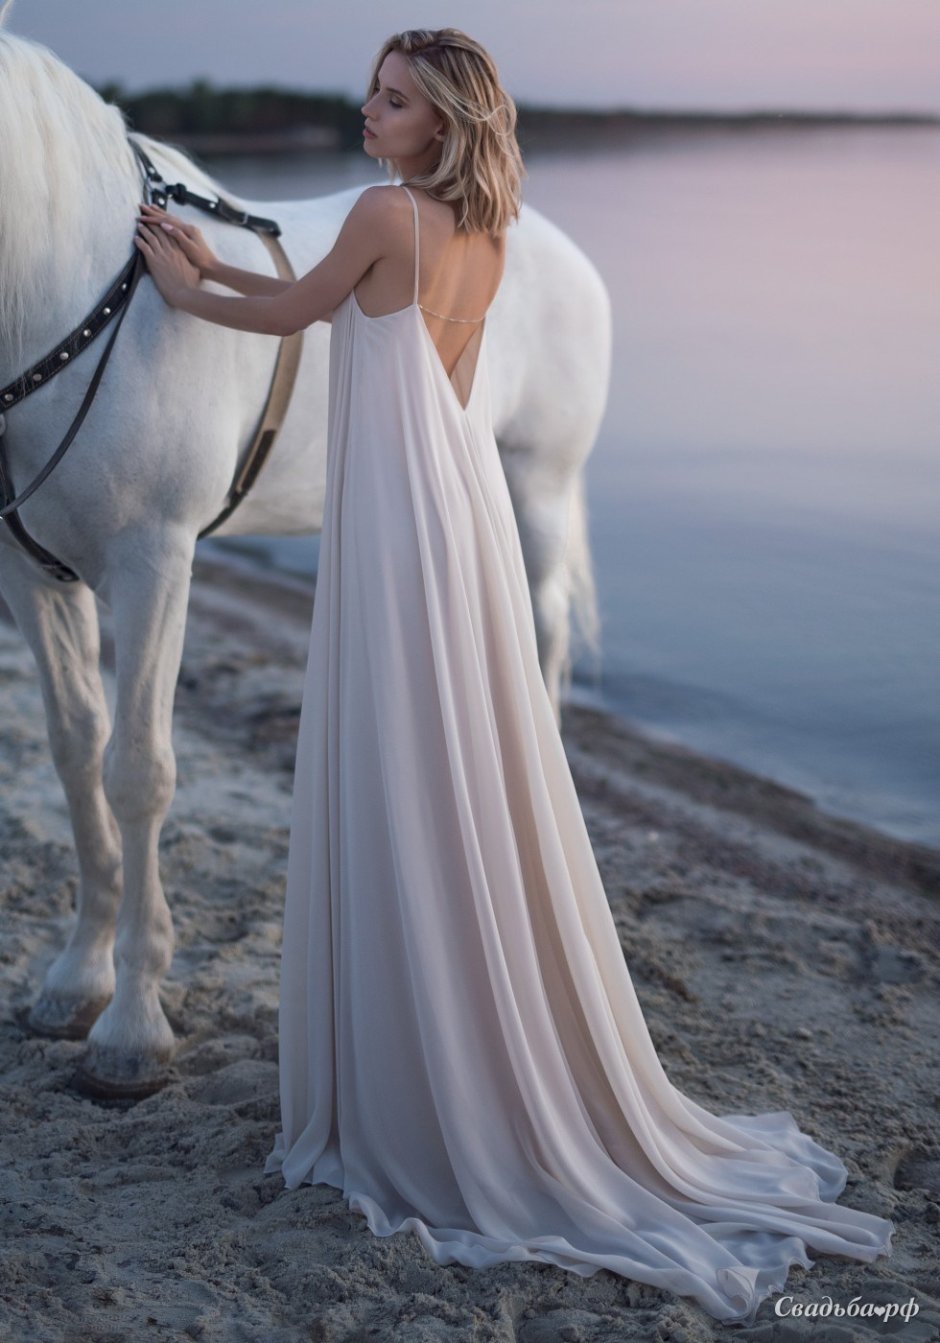 Романтическая фотосессия на лошадях